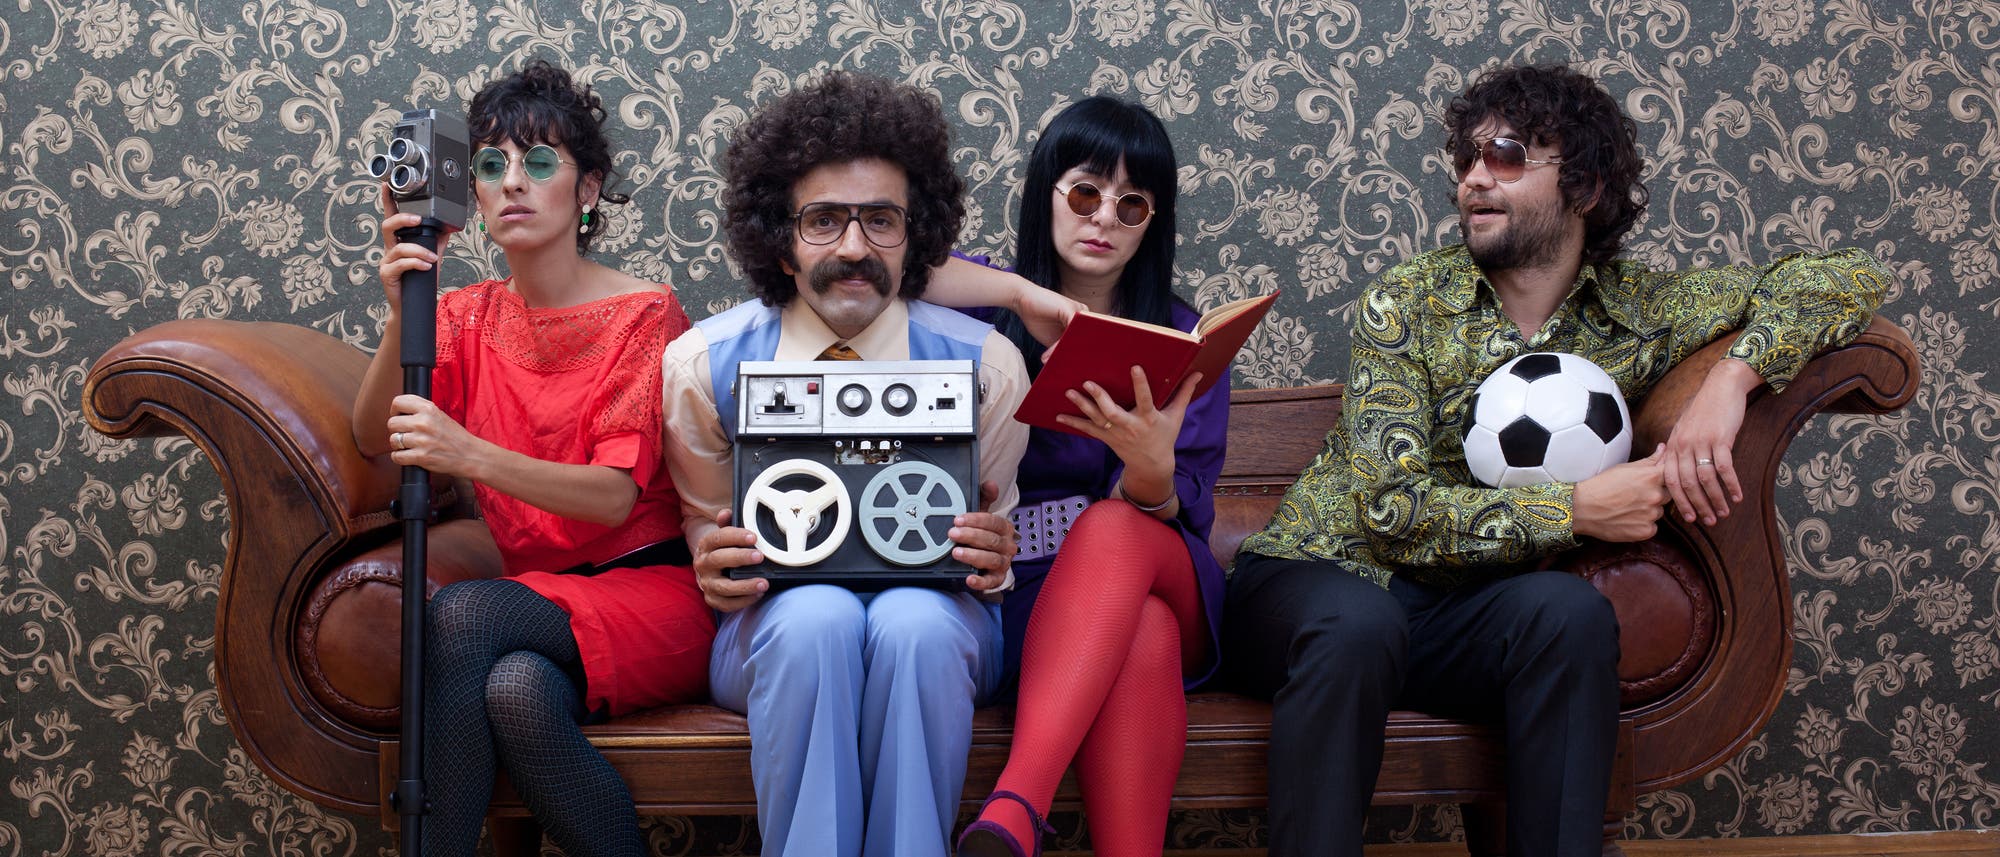 Vier freakige junge Leute im Sixties- oder Seventies-Outfit auf einer Couch